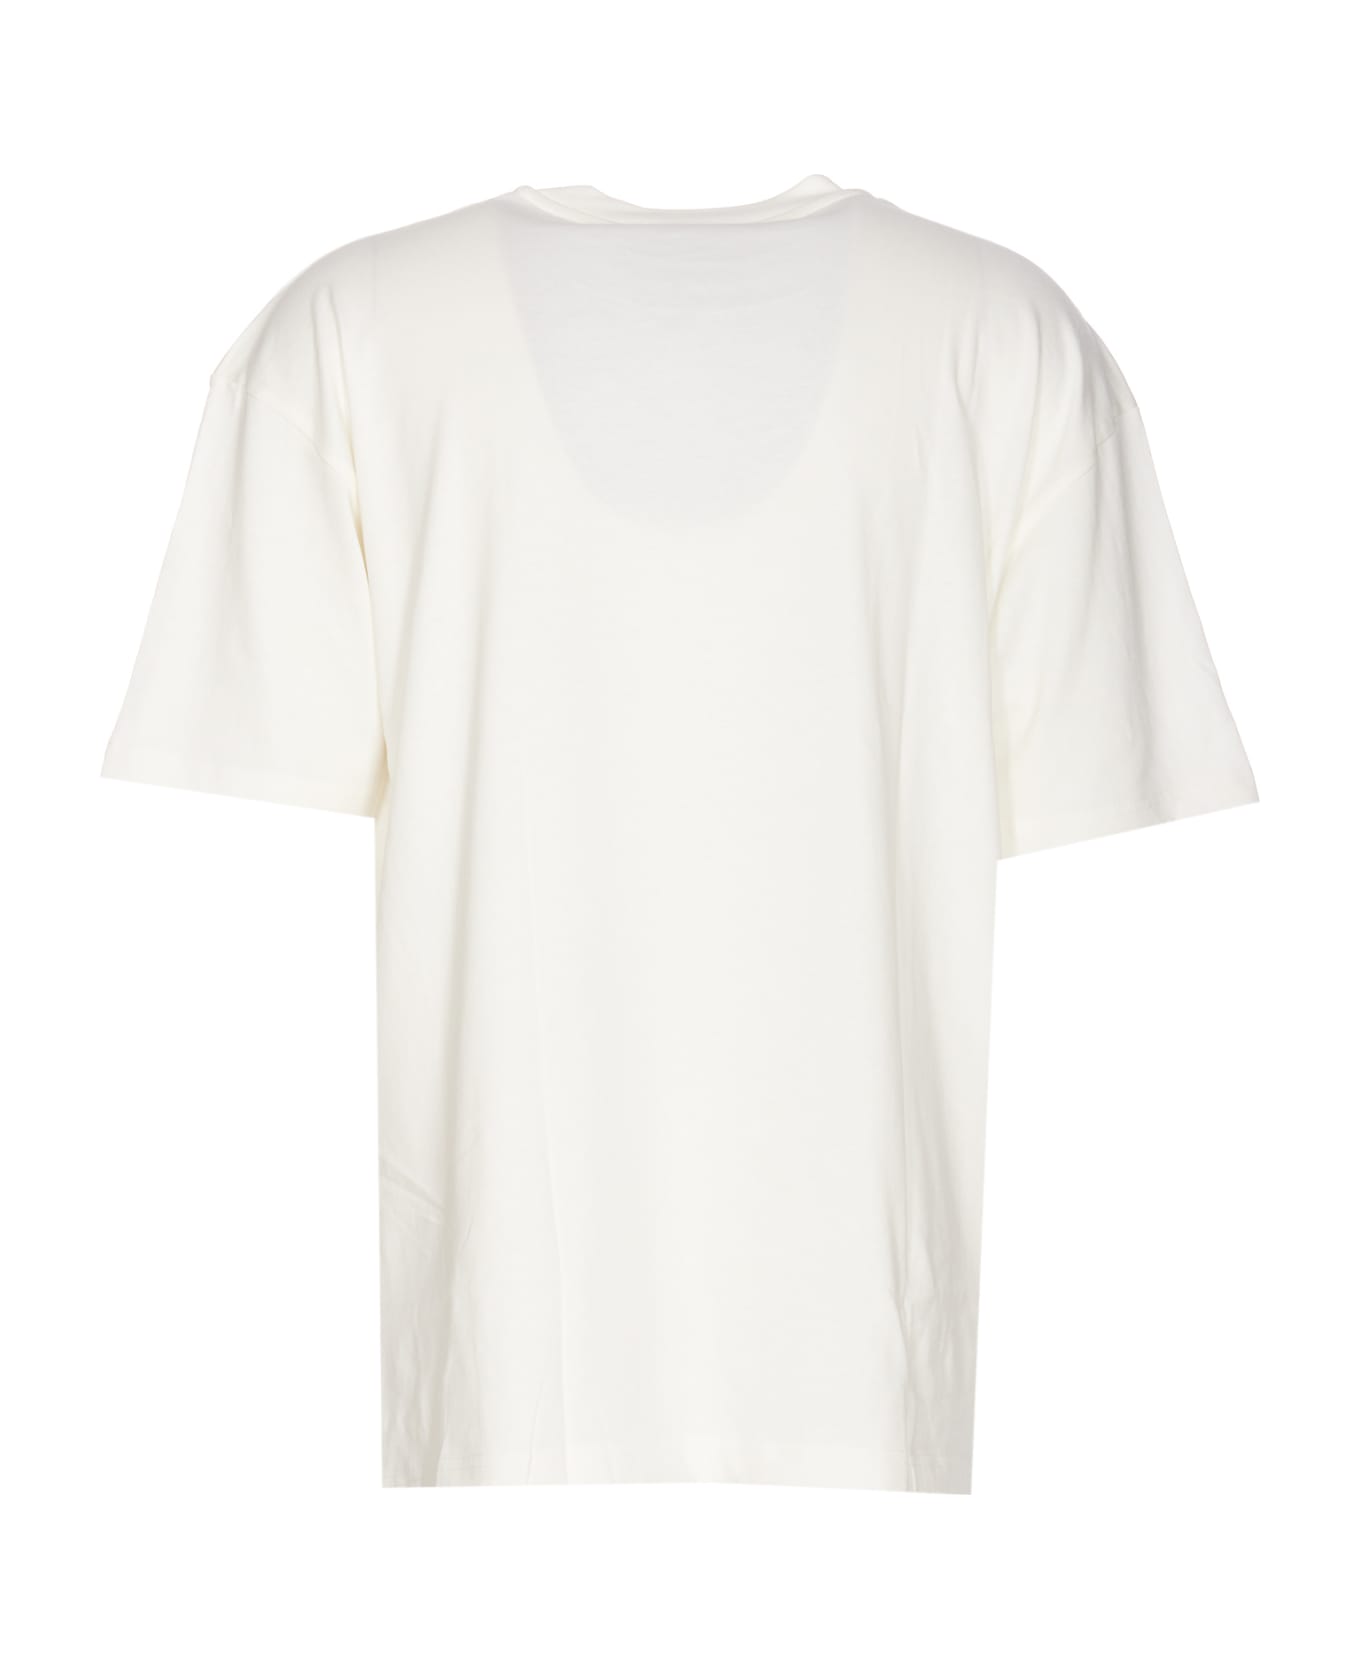 Vision of Super Logo T-shirt - White